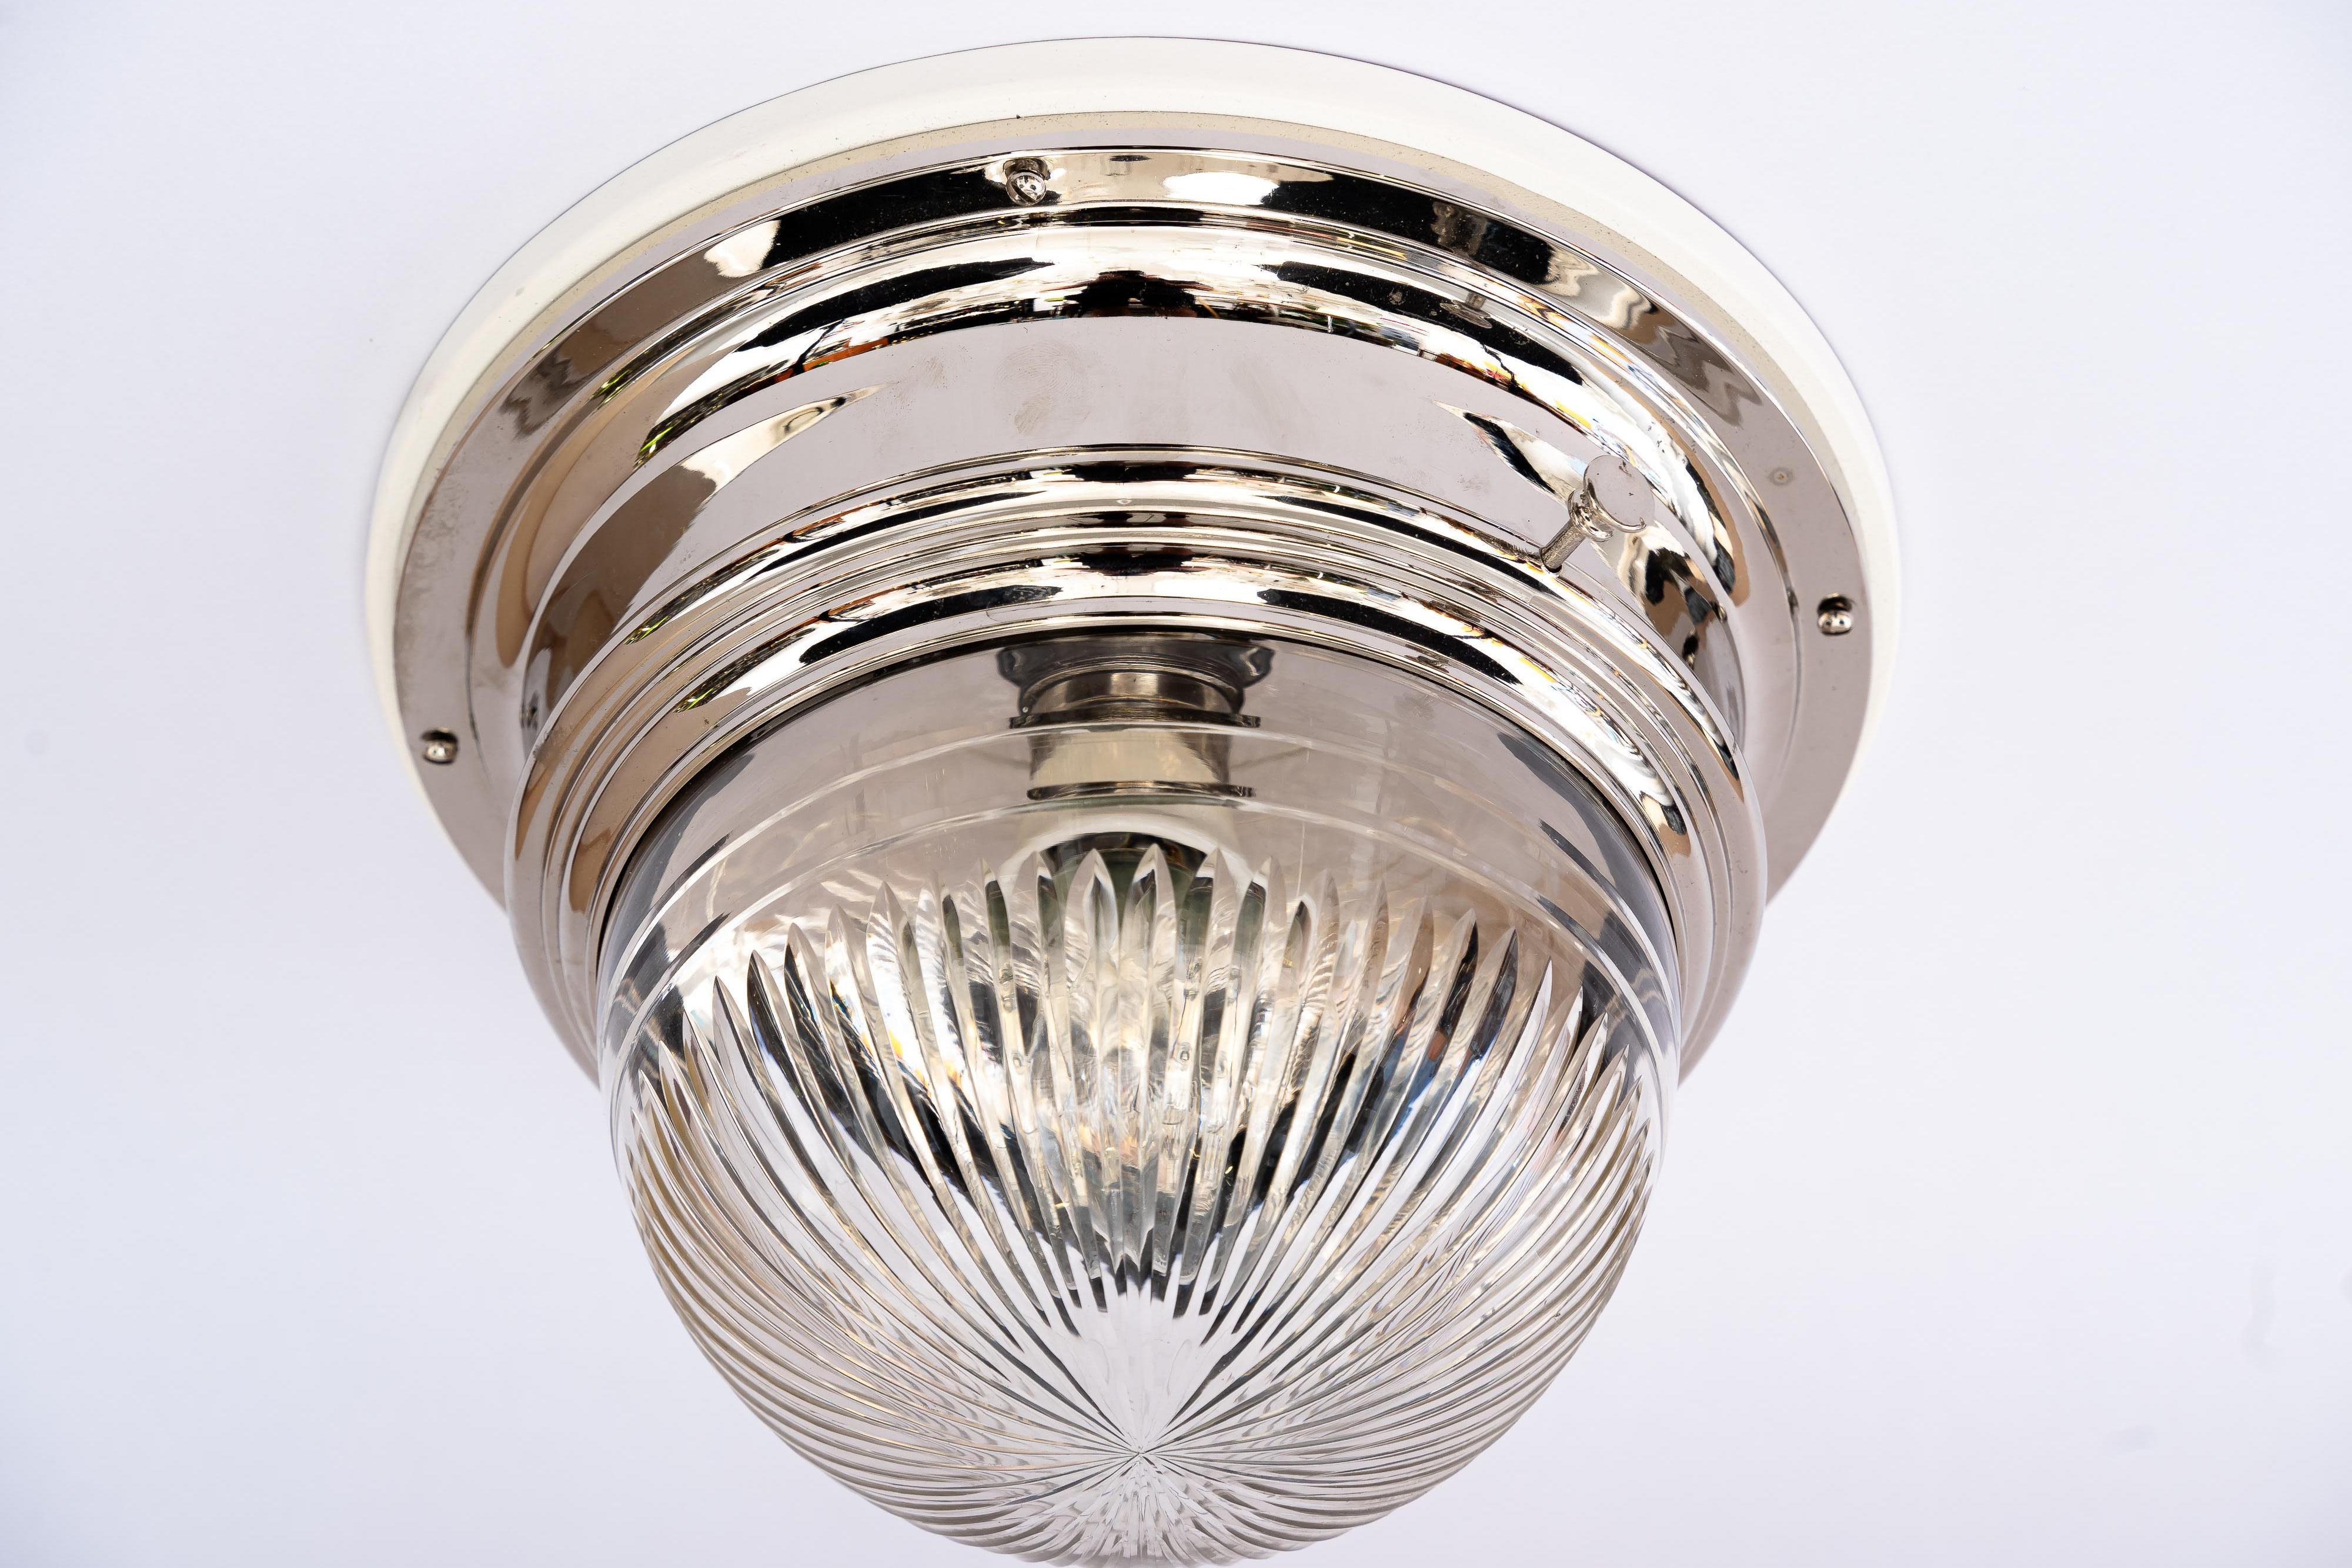 Art Deco vernickelte Deckenlampe mit geschliffenem Glasschirm um 1920er Jahre
Messing ist vernickelt
Original geschliffener Glasschirm
Holzplatte ist weiß lackiert
